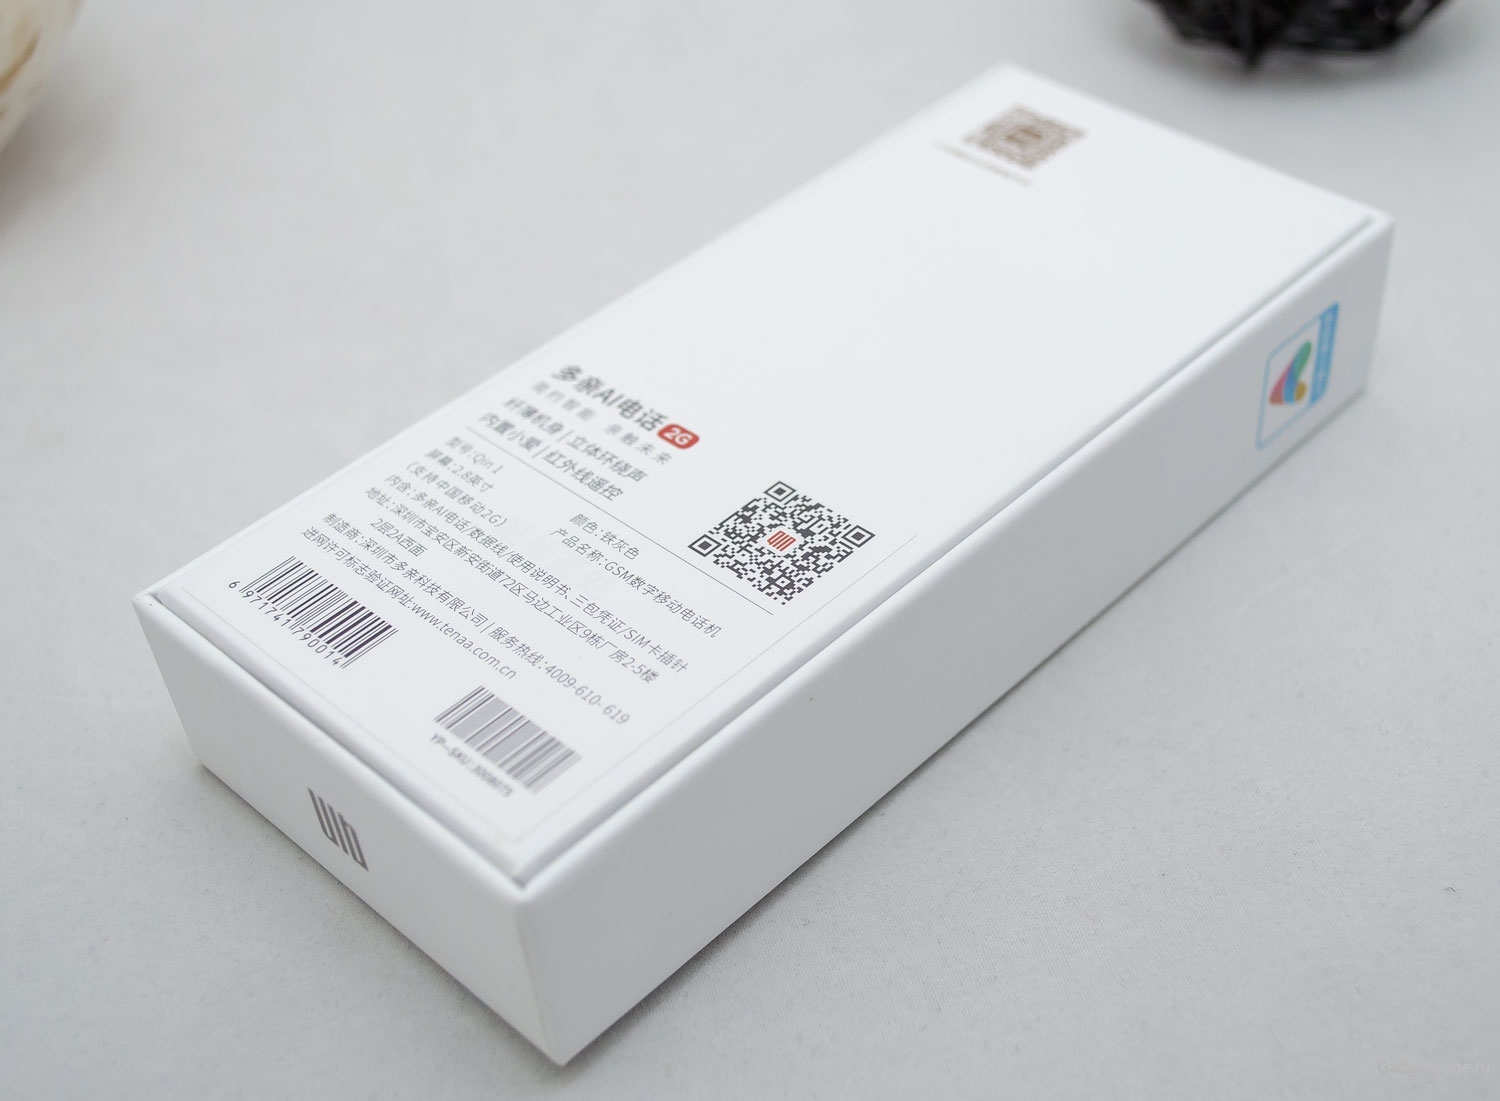 Xiaomi Qin 1c